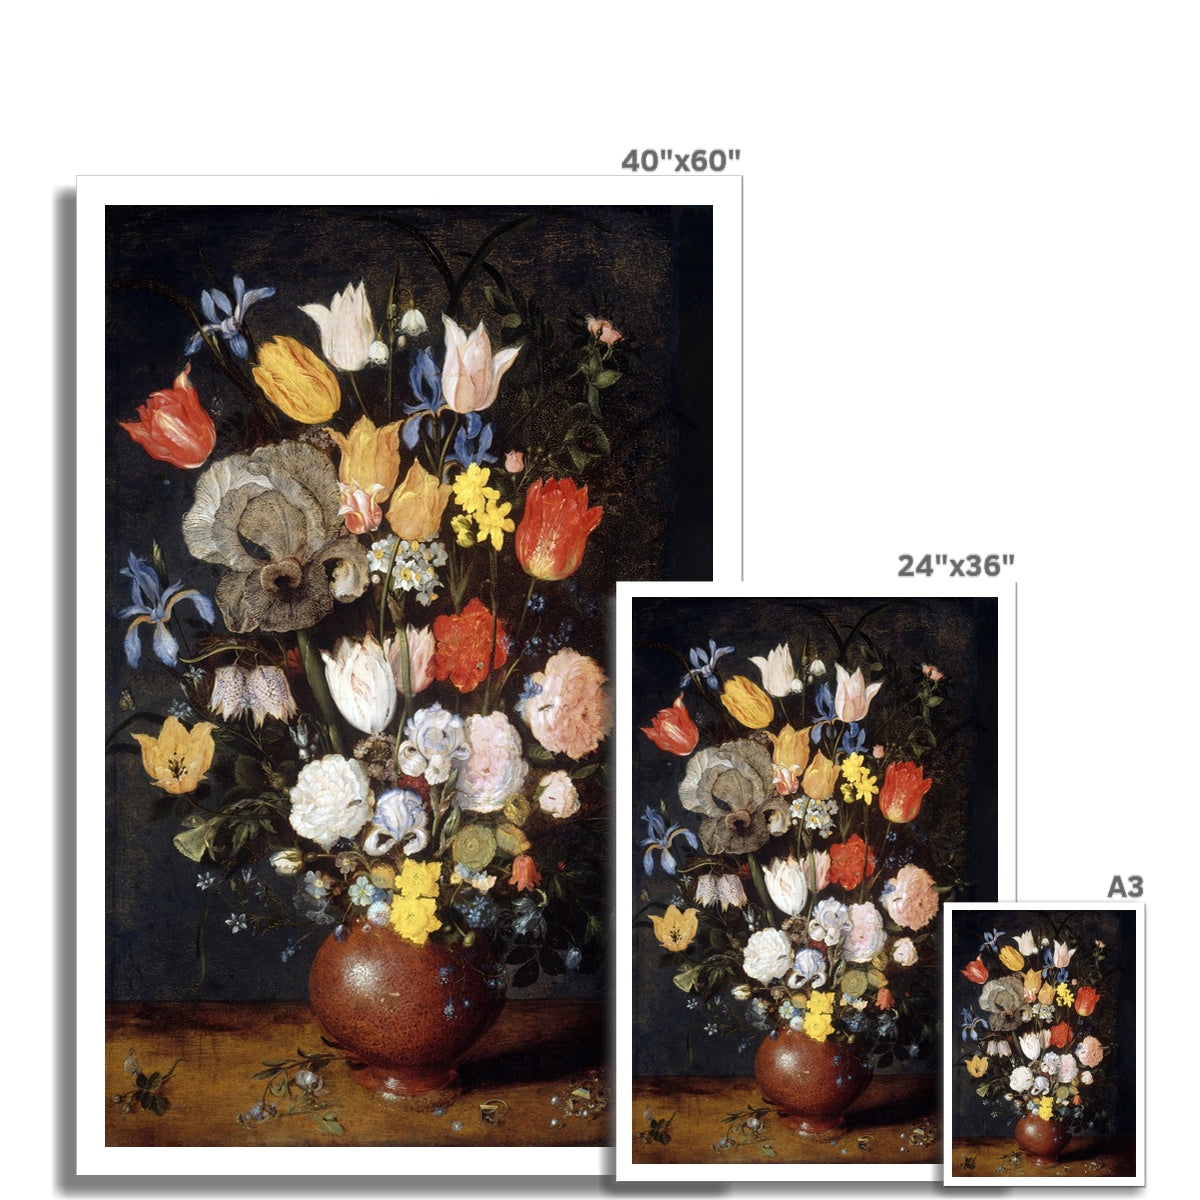 &#39;Bouquet of Flowers in an Earthenware Vase&#39; Still Life by Jan Breughel the Elder. Open Edition Fine Art Print. Historic Art